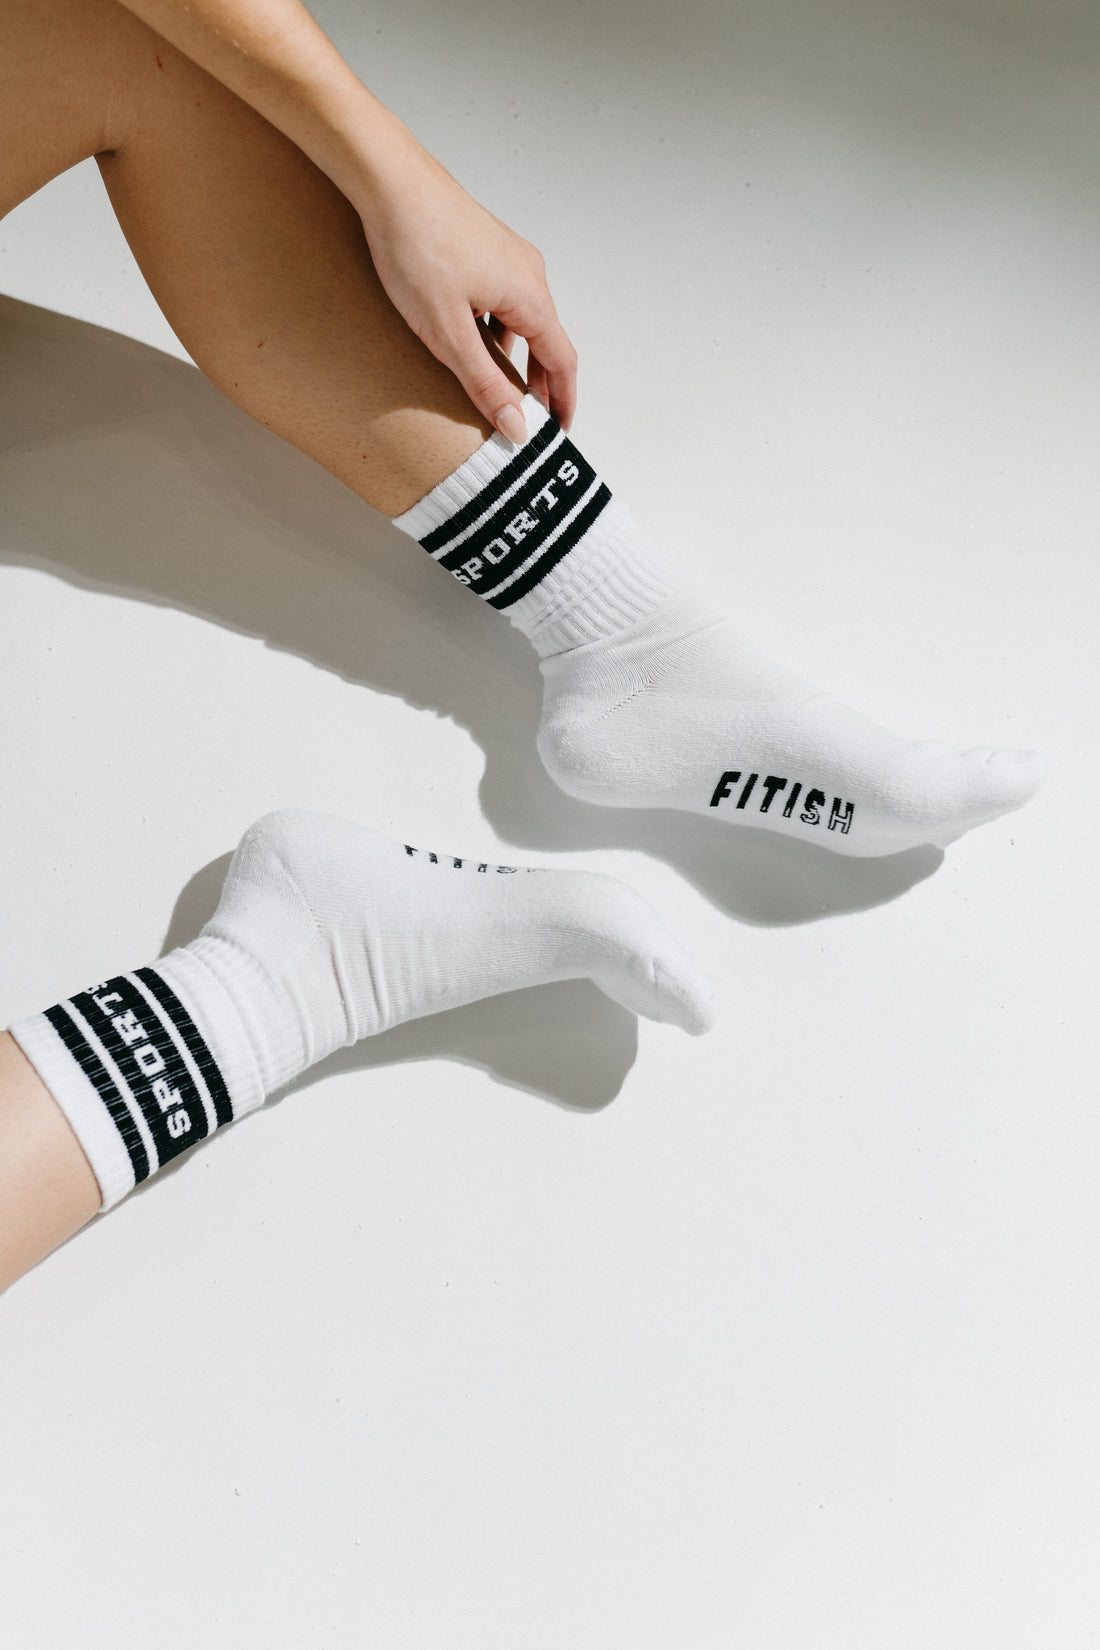 fitish sports socks